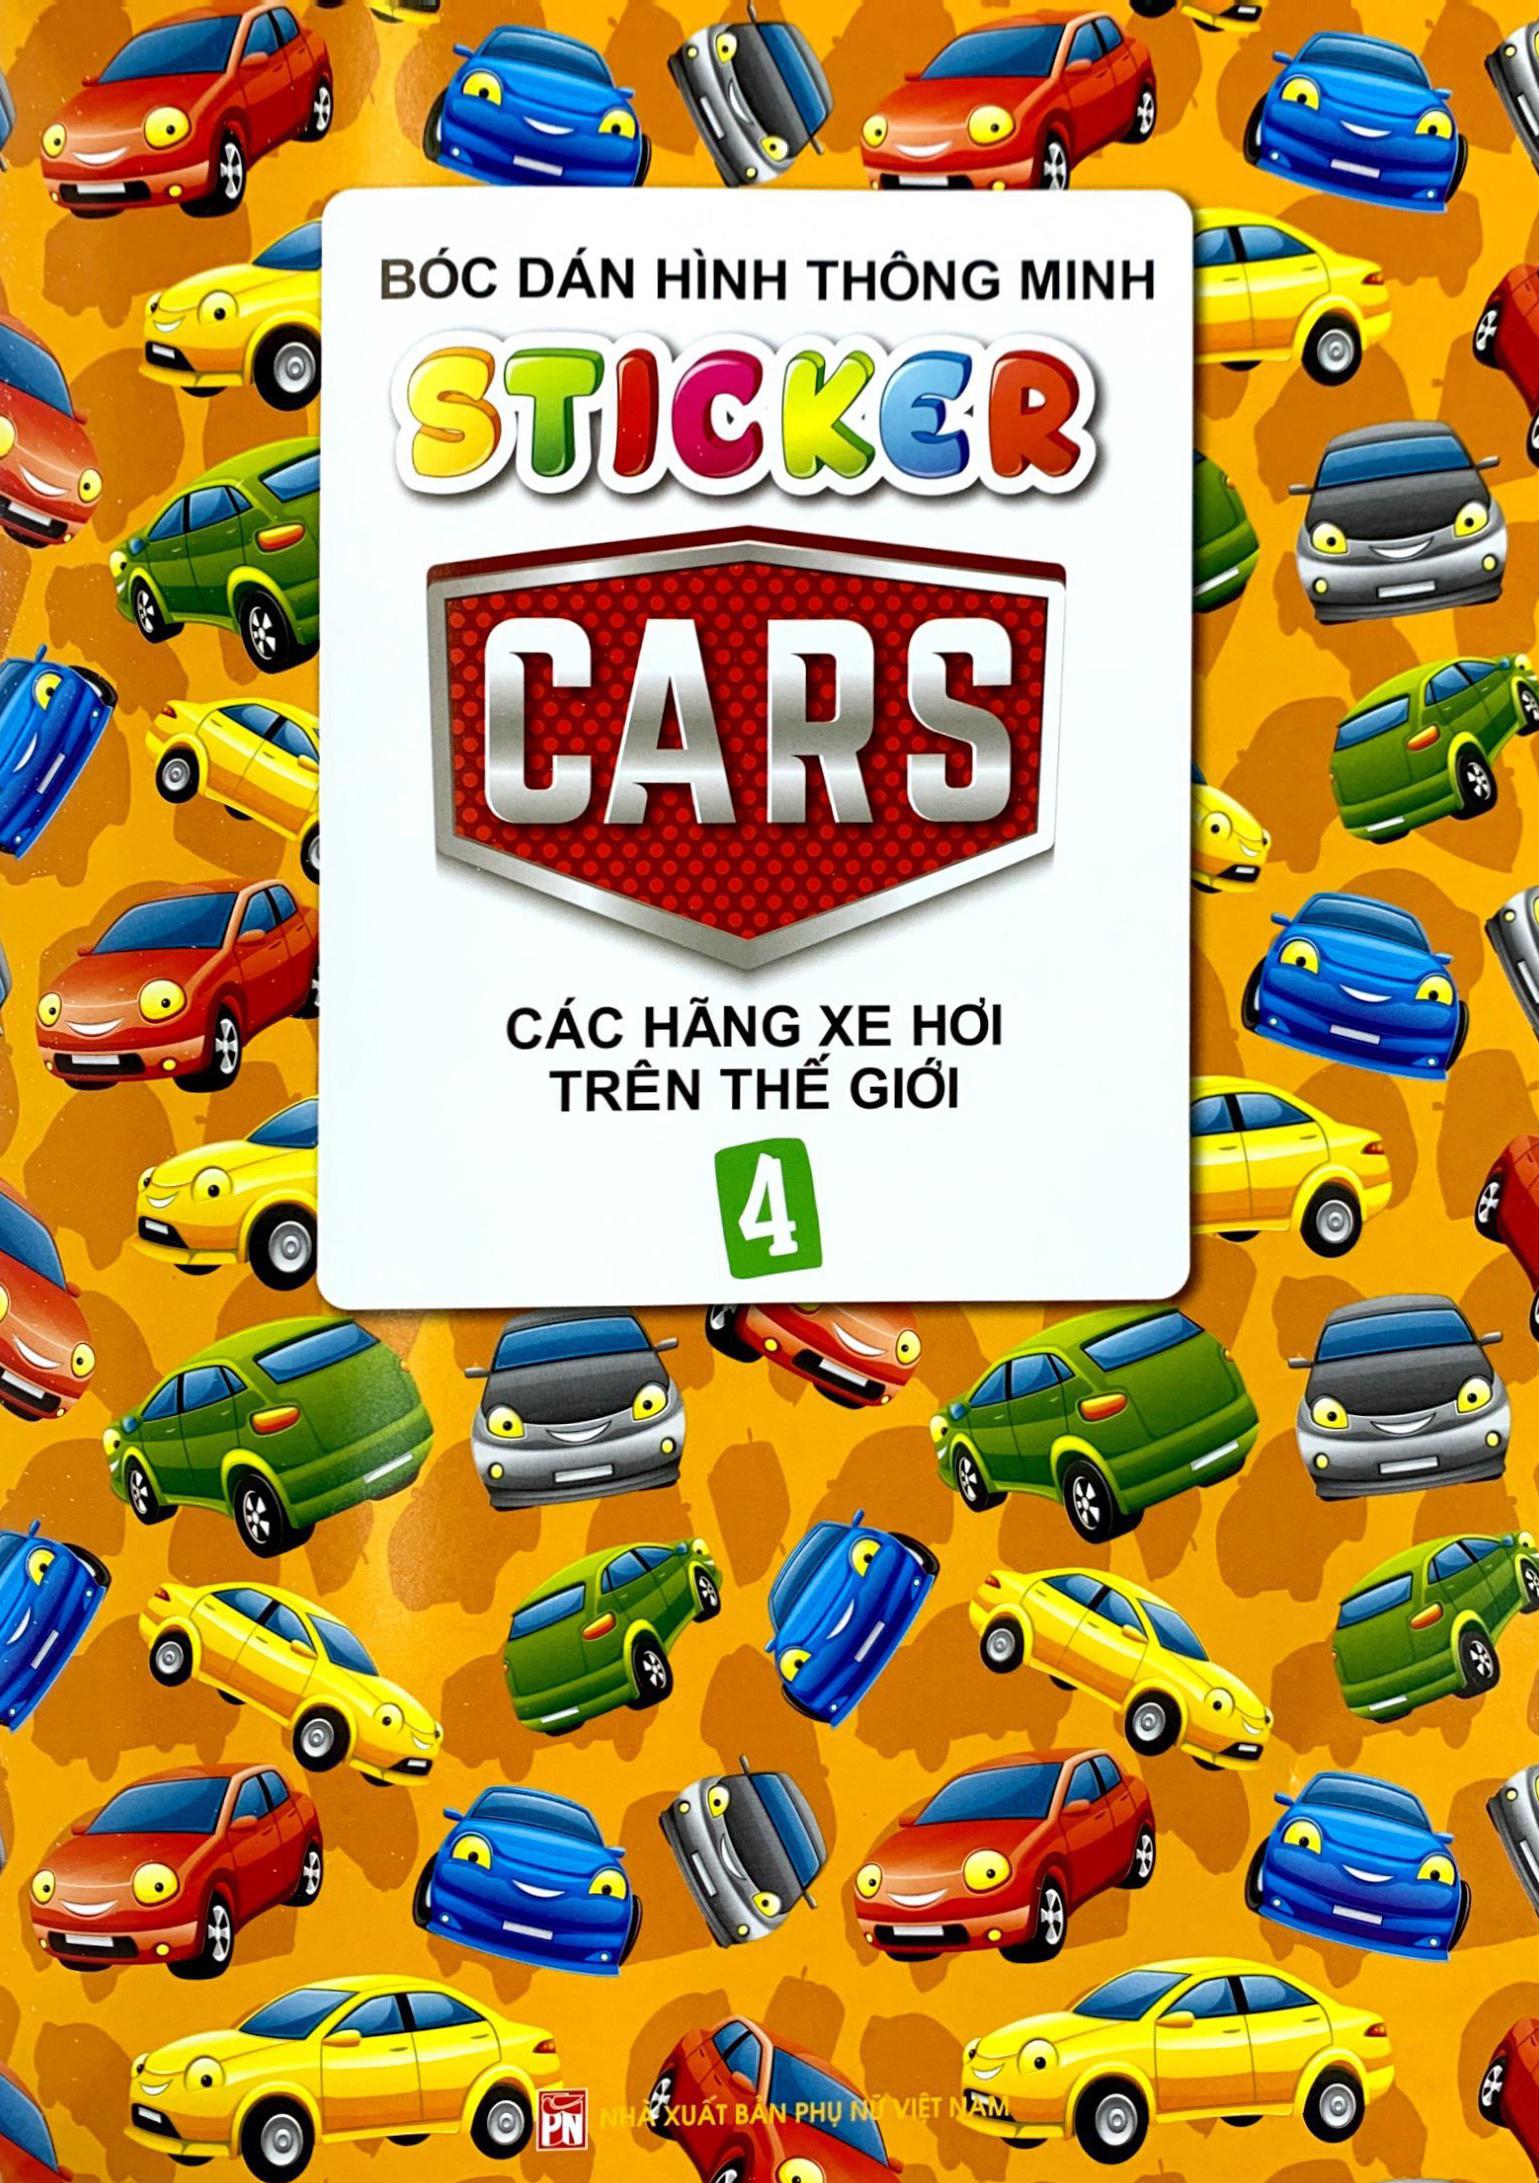 Sticker Bóc Dán Hình Thông Minh - Car - Các Hãng Xe Trên Thế Giới 4